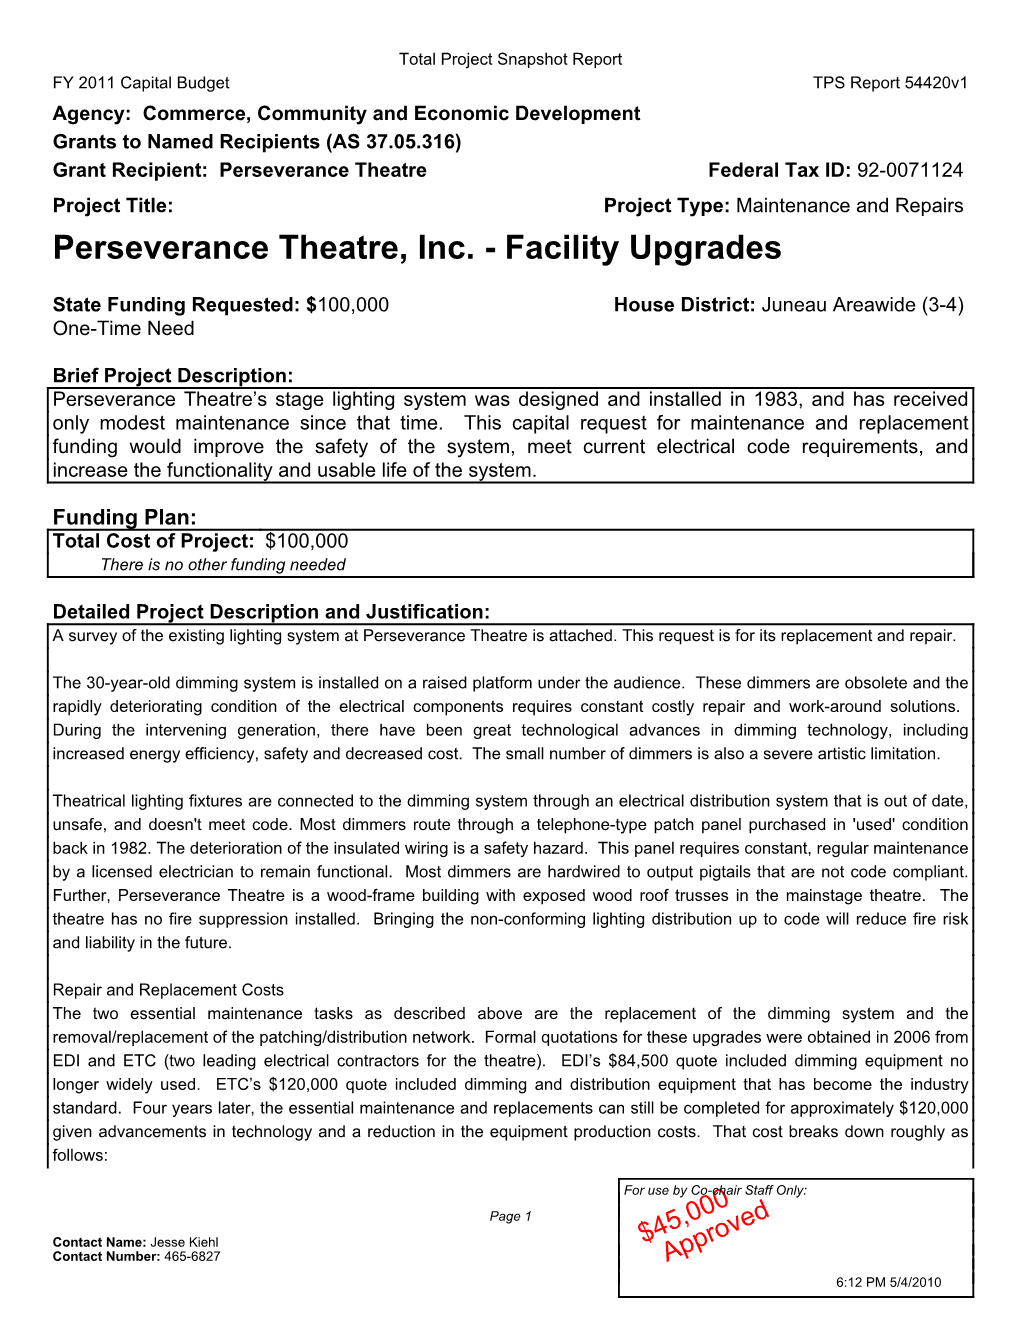 Perseverance Theatre, Inc. - Facility Upgrades